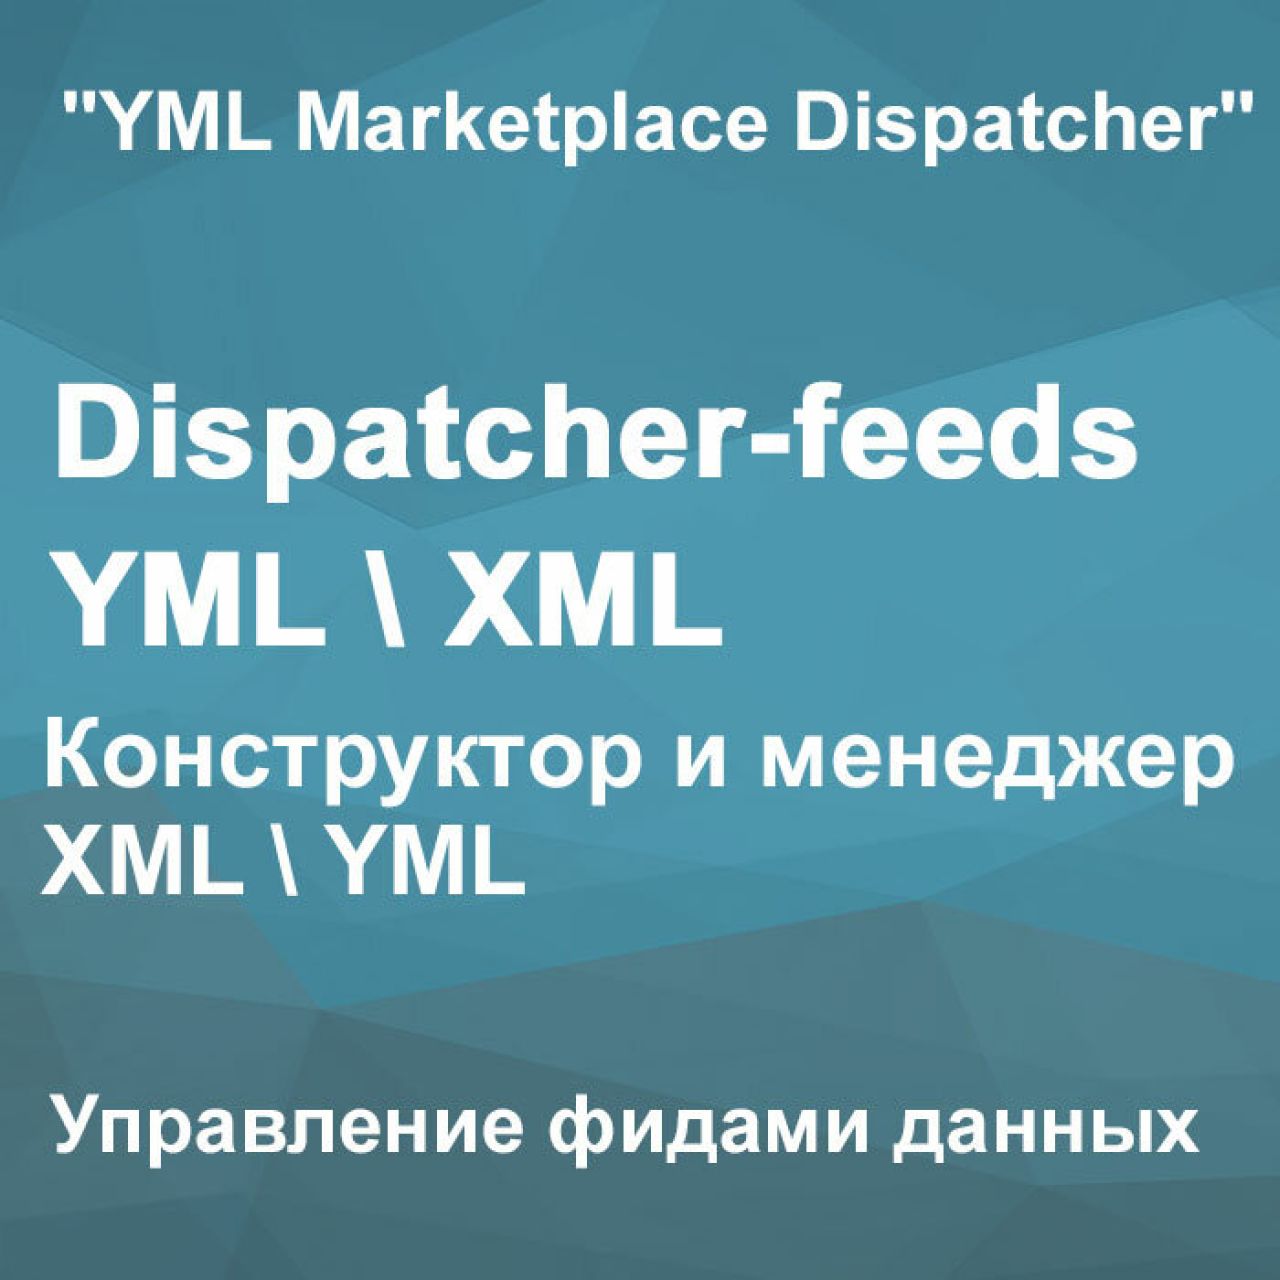 Dispatcher-feeds YML\XML - Управление фидами данных 3.0 из категории Обмен данными для CMS OpenCart (ОпенКарт)